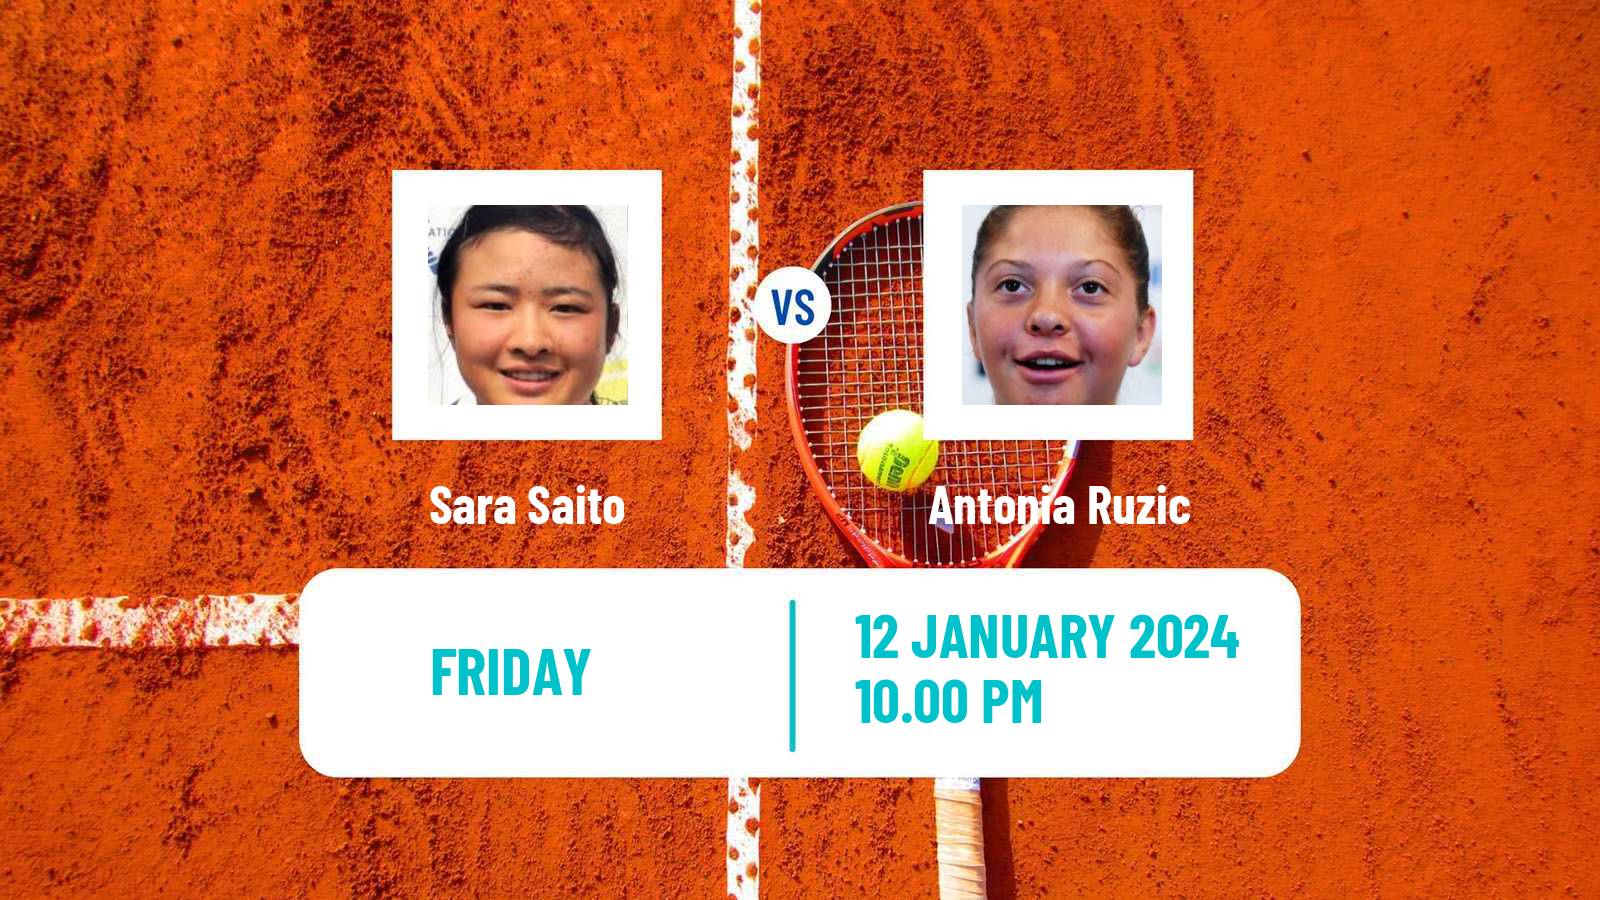 Tennis ITF W50 Nonthaburi 2 Women Sara Saito - Antonia Ruzic